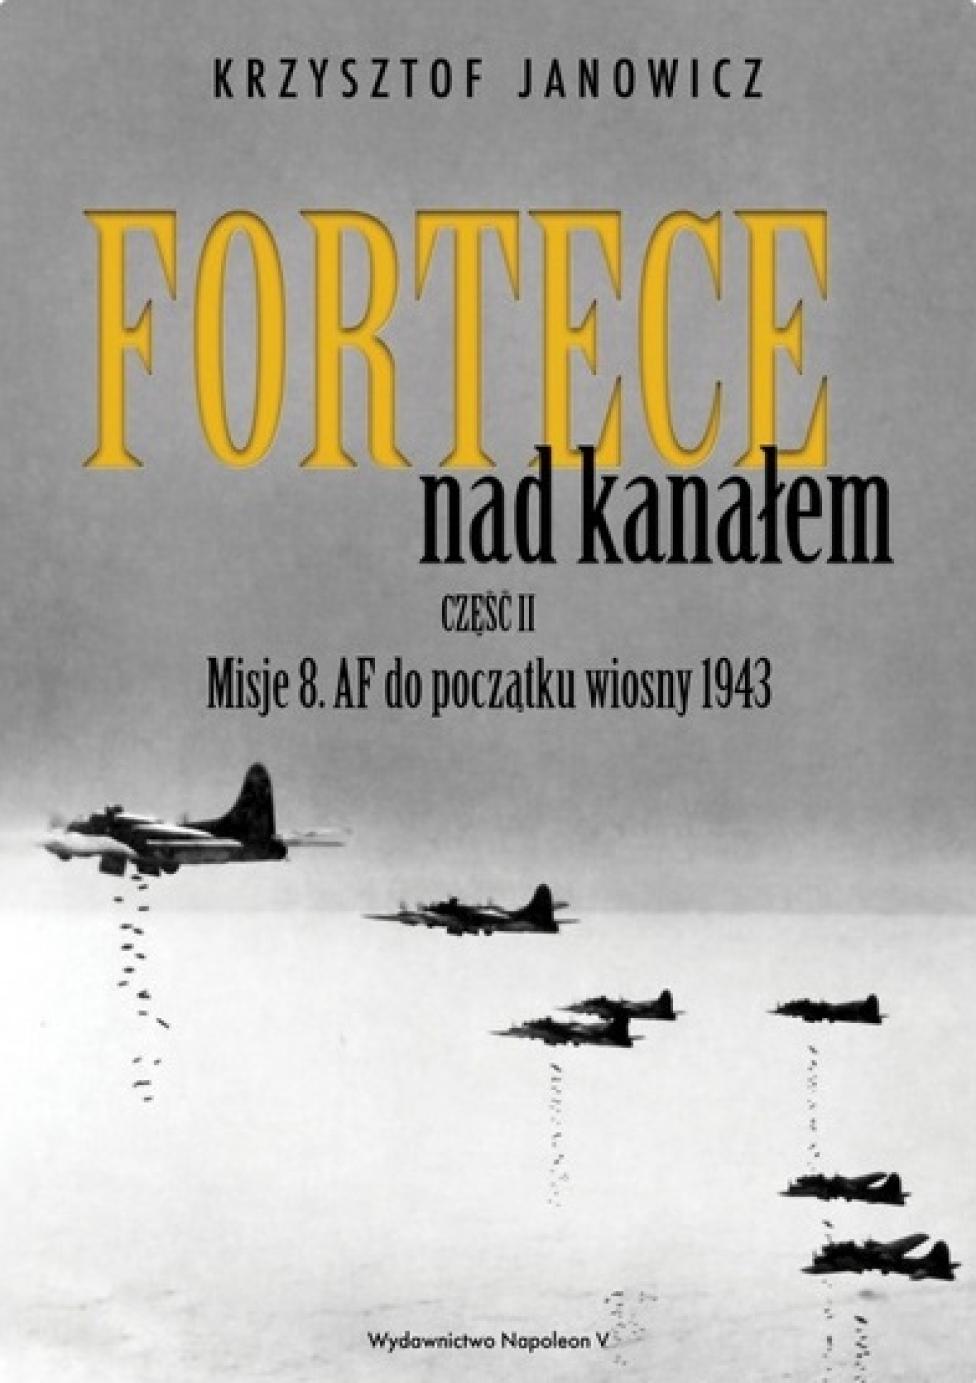 Książka "Fortece nad kanałem część II. Misje 8. AF do początku wiosny 1943" (fot. napoleonv.pl)